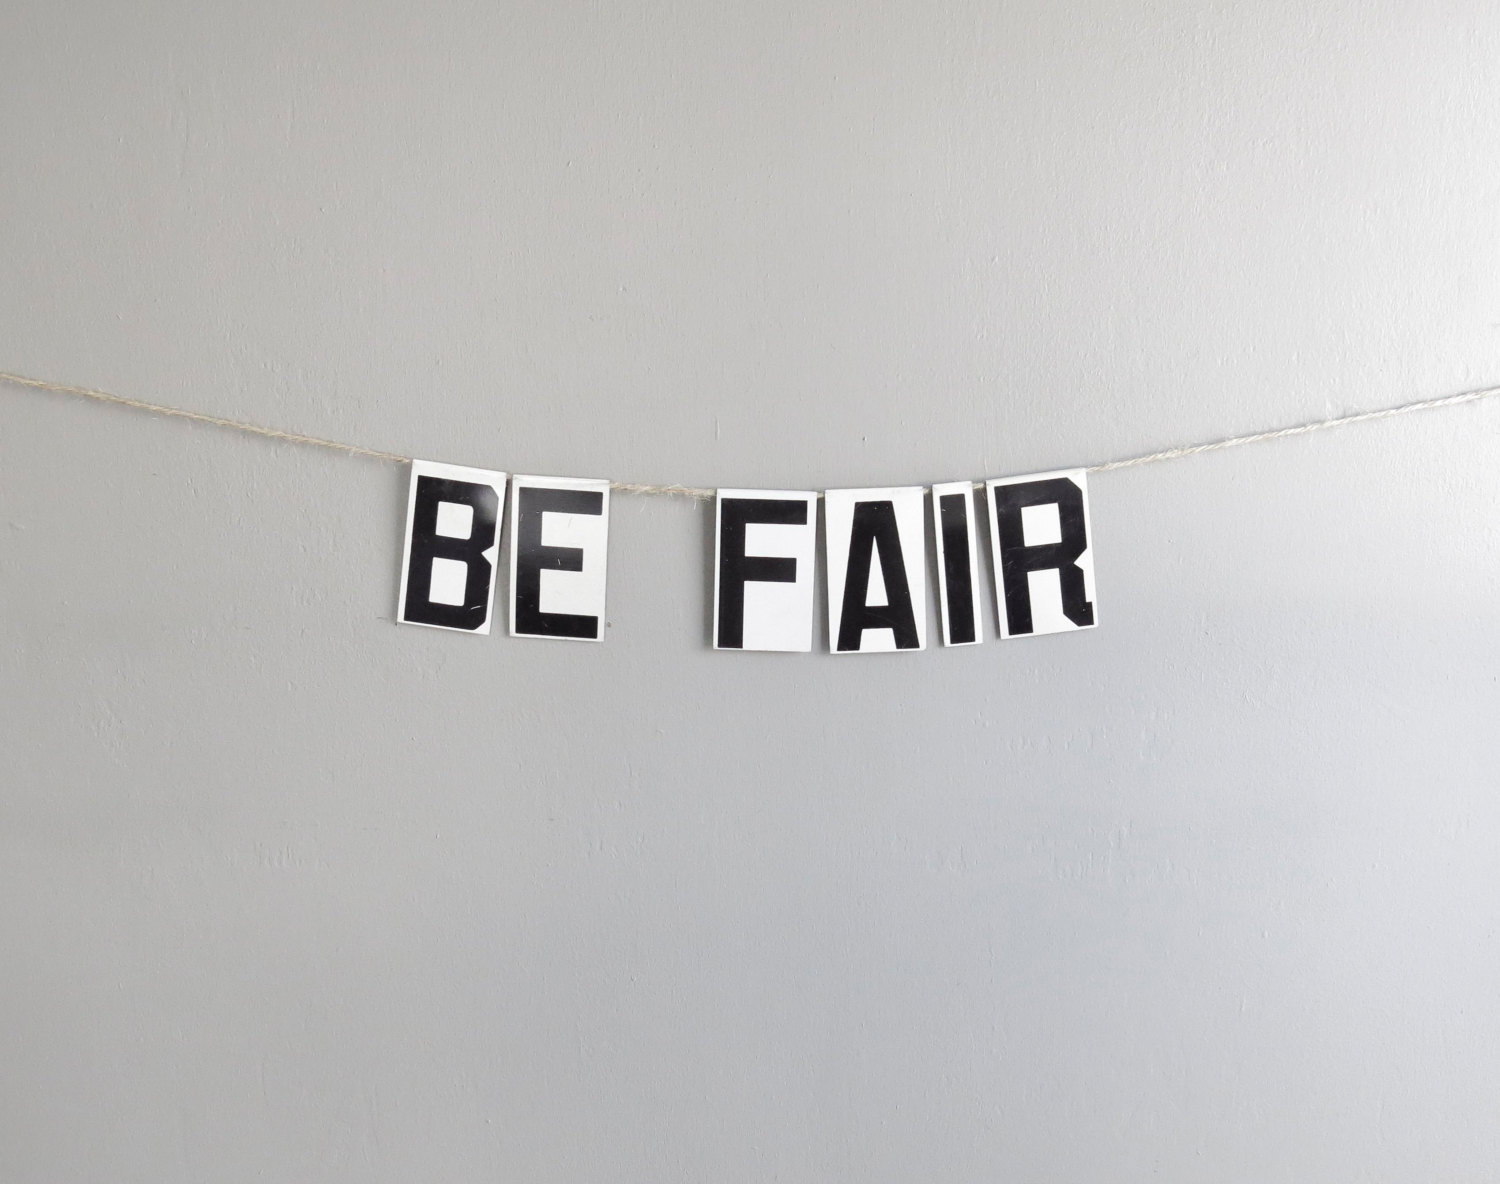 Be Fair